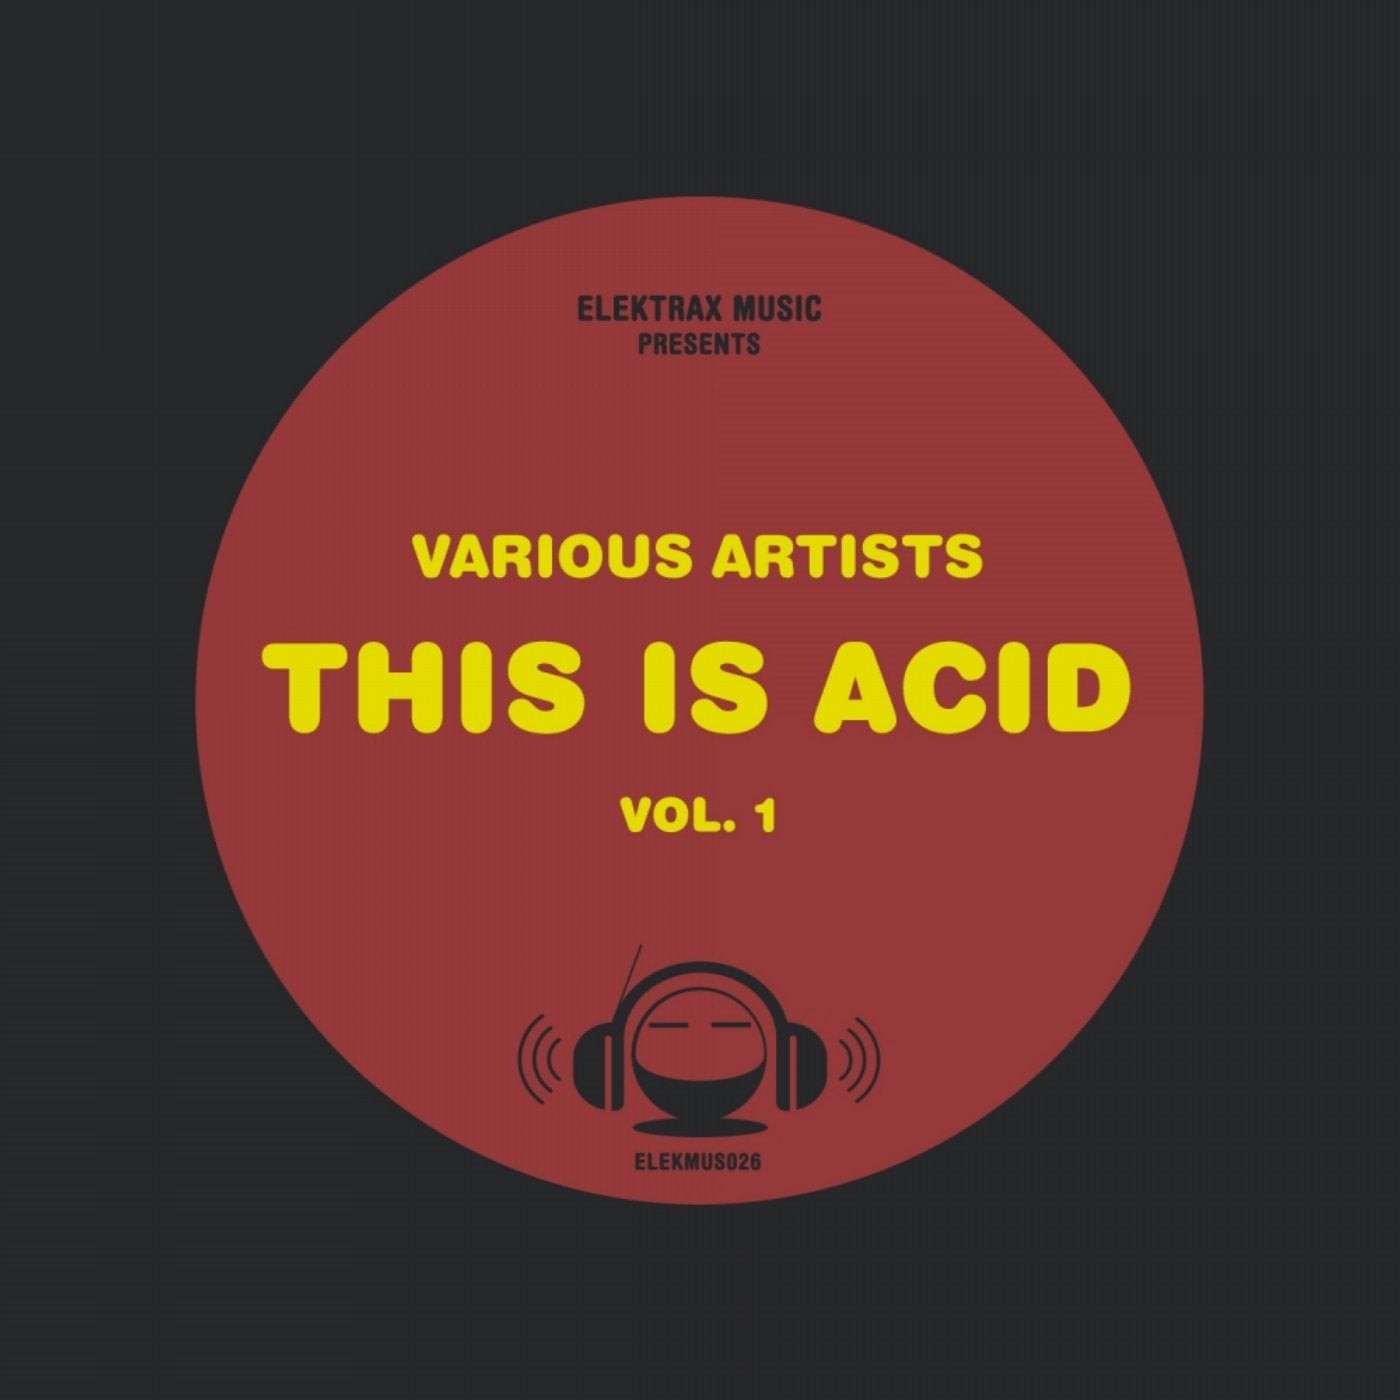 This Is Acid, Vol. 1